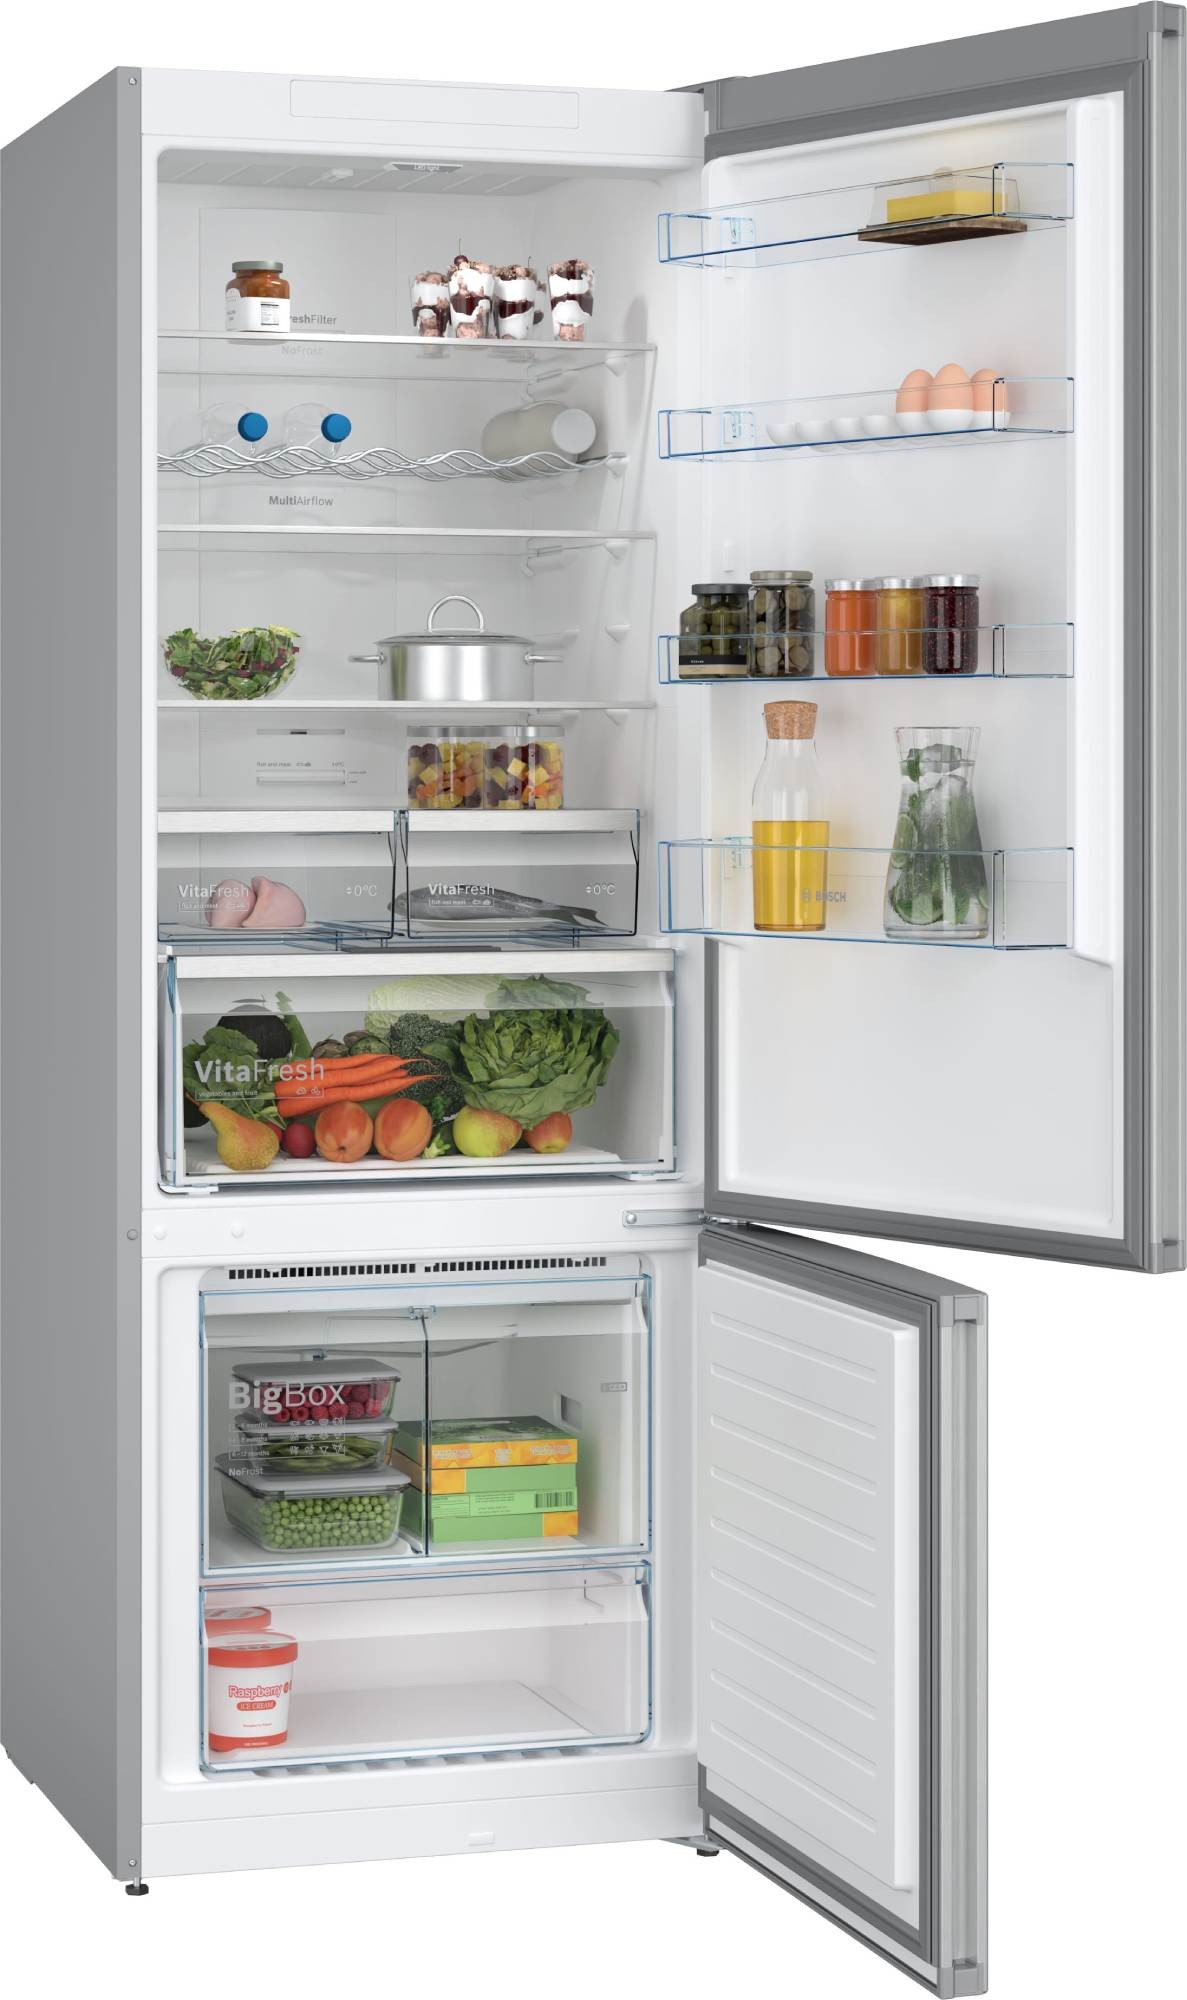 BOSCH Réfrigérateur congélateur bas Série 4 No Frost 400L Inox - KGN56XLEB